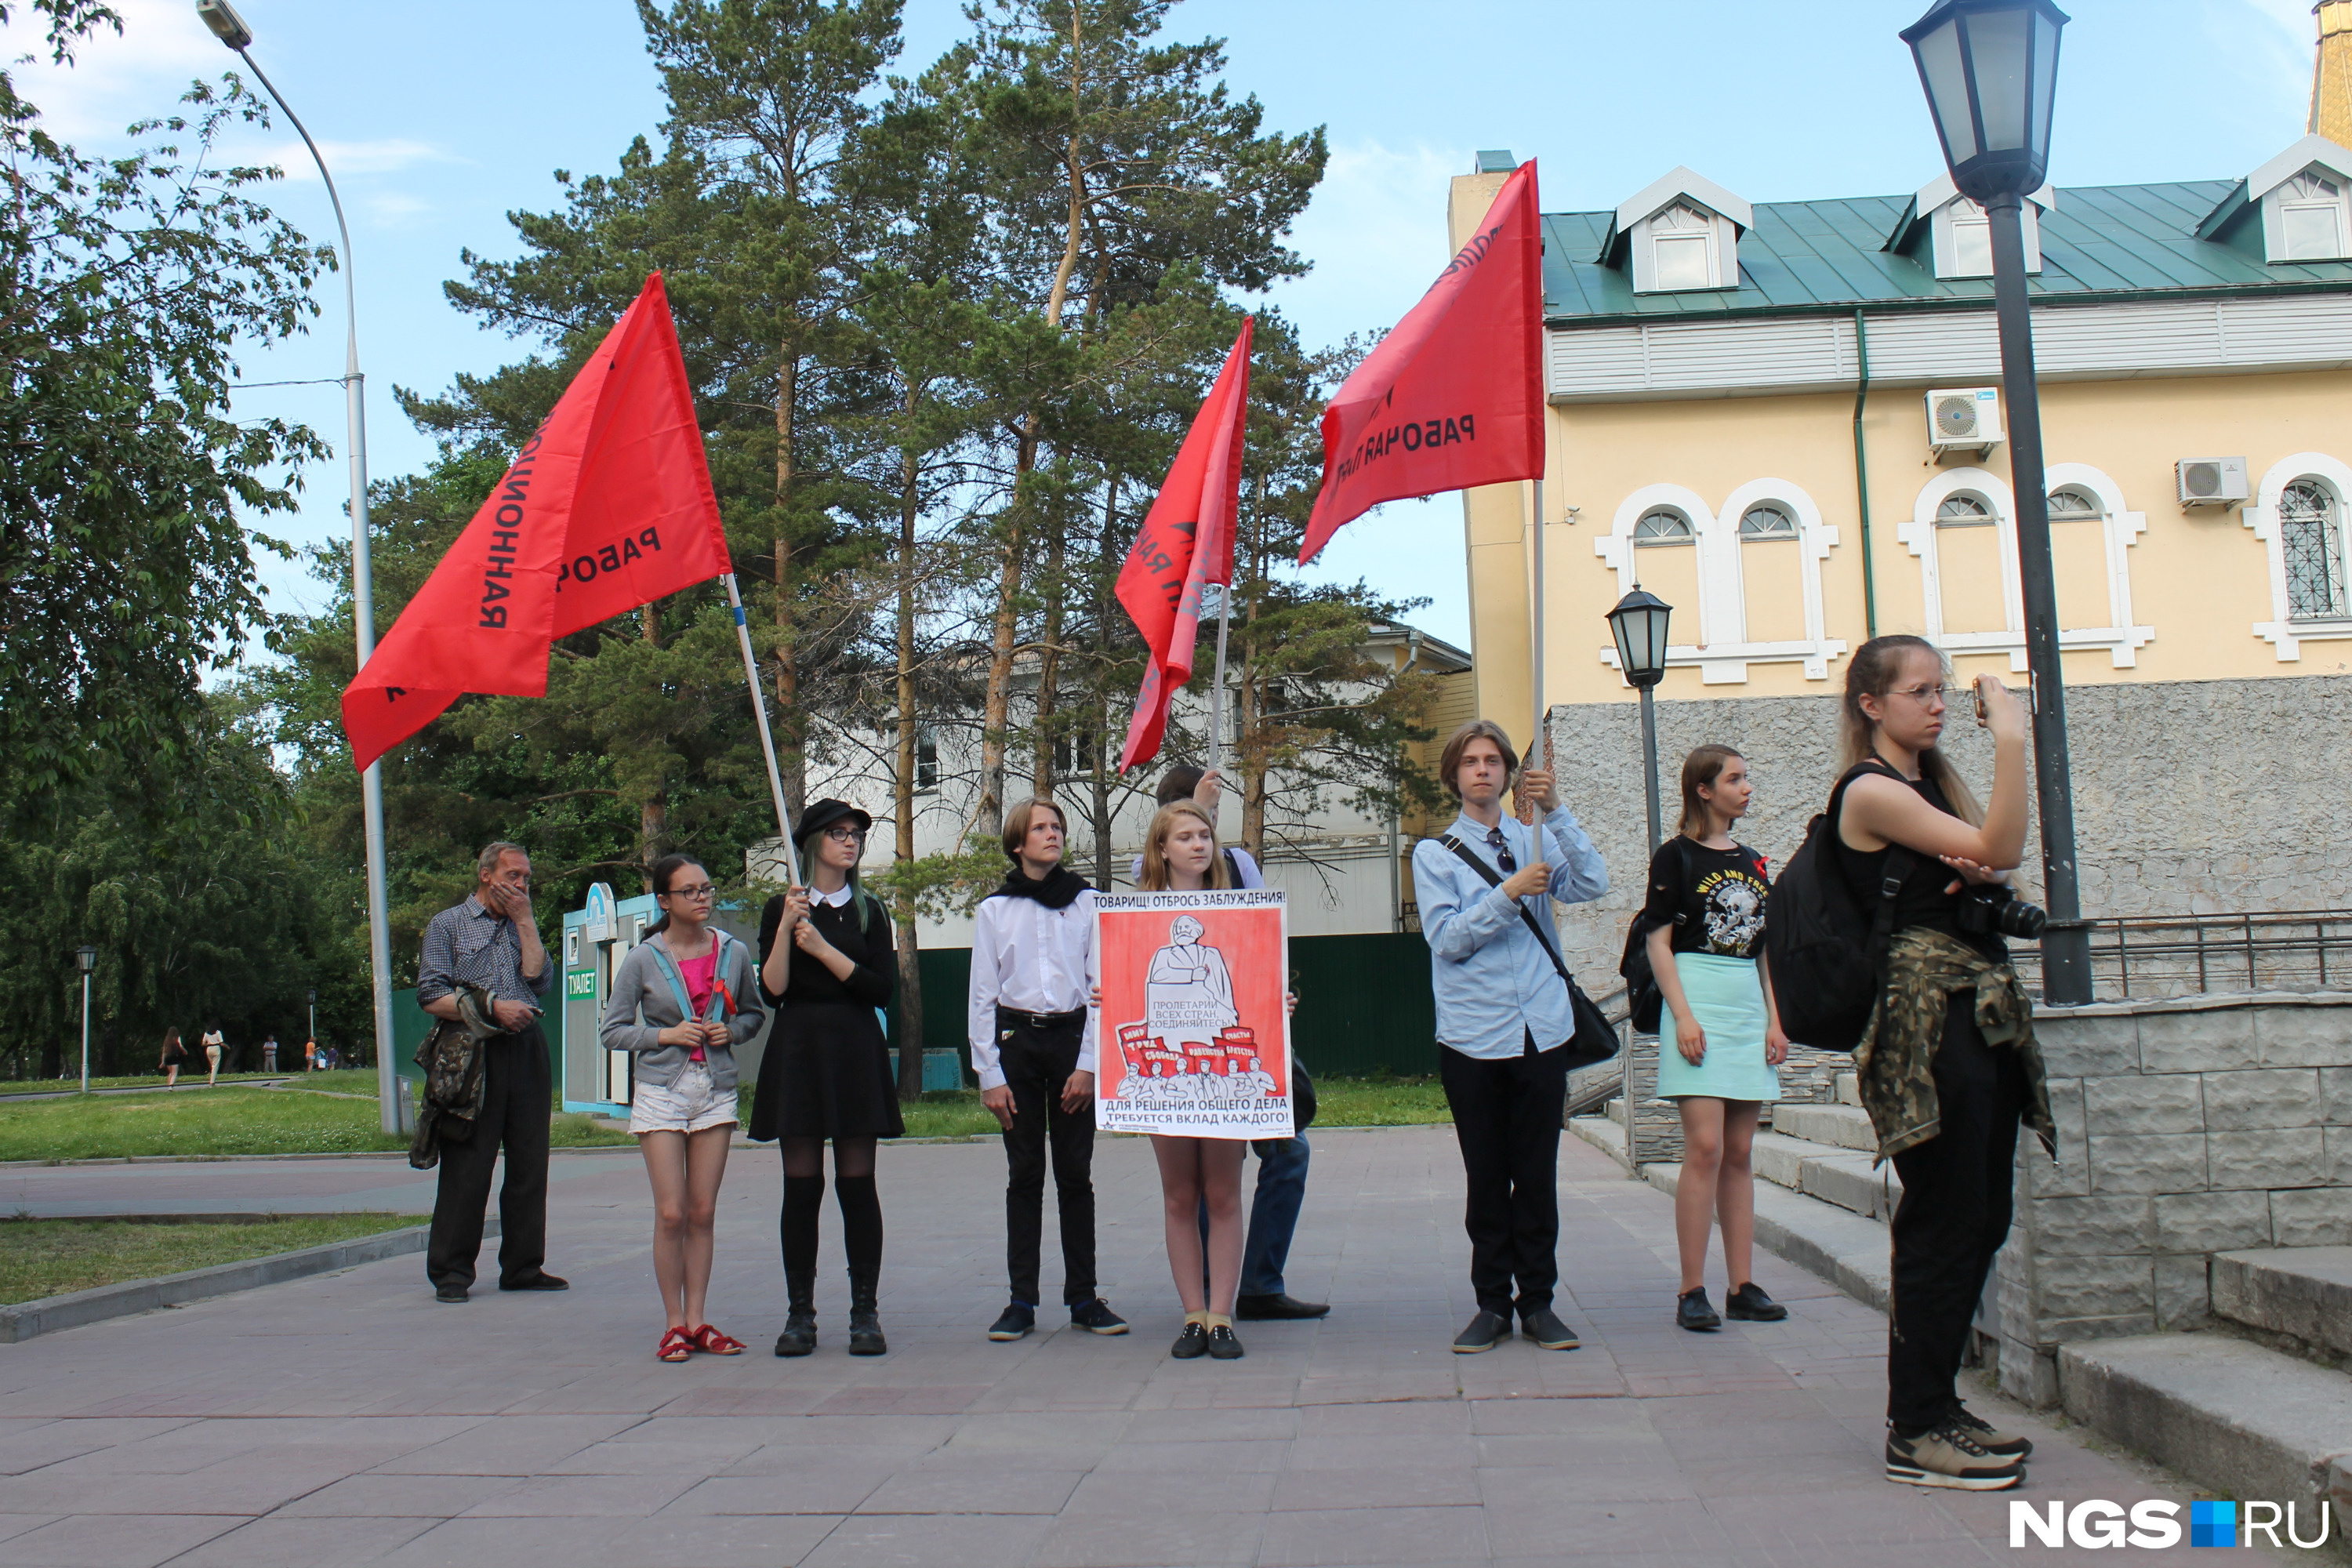 Молодёжь пришла с флагами Революционной рабочей партии. Митинг уложился в час